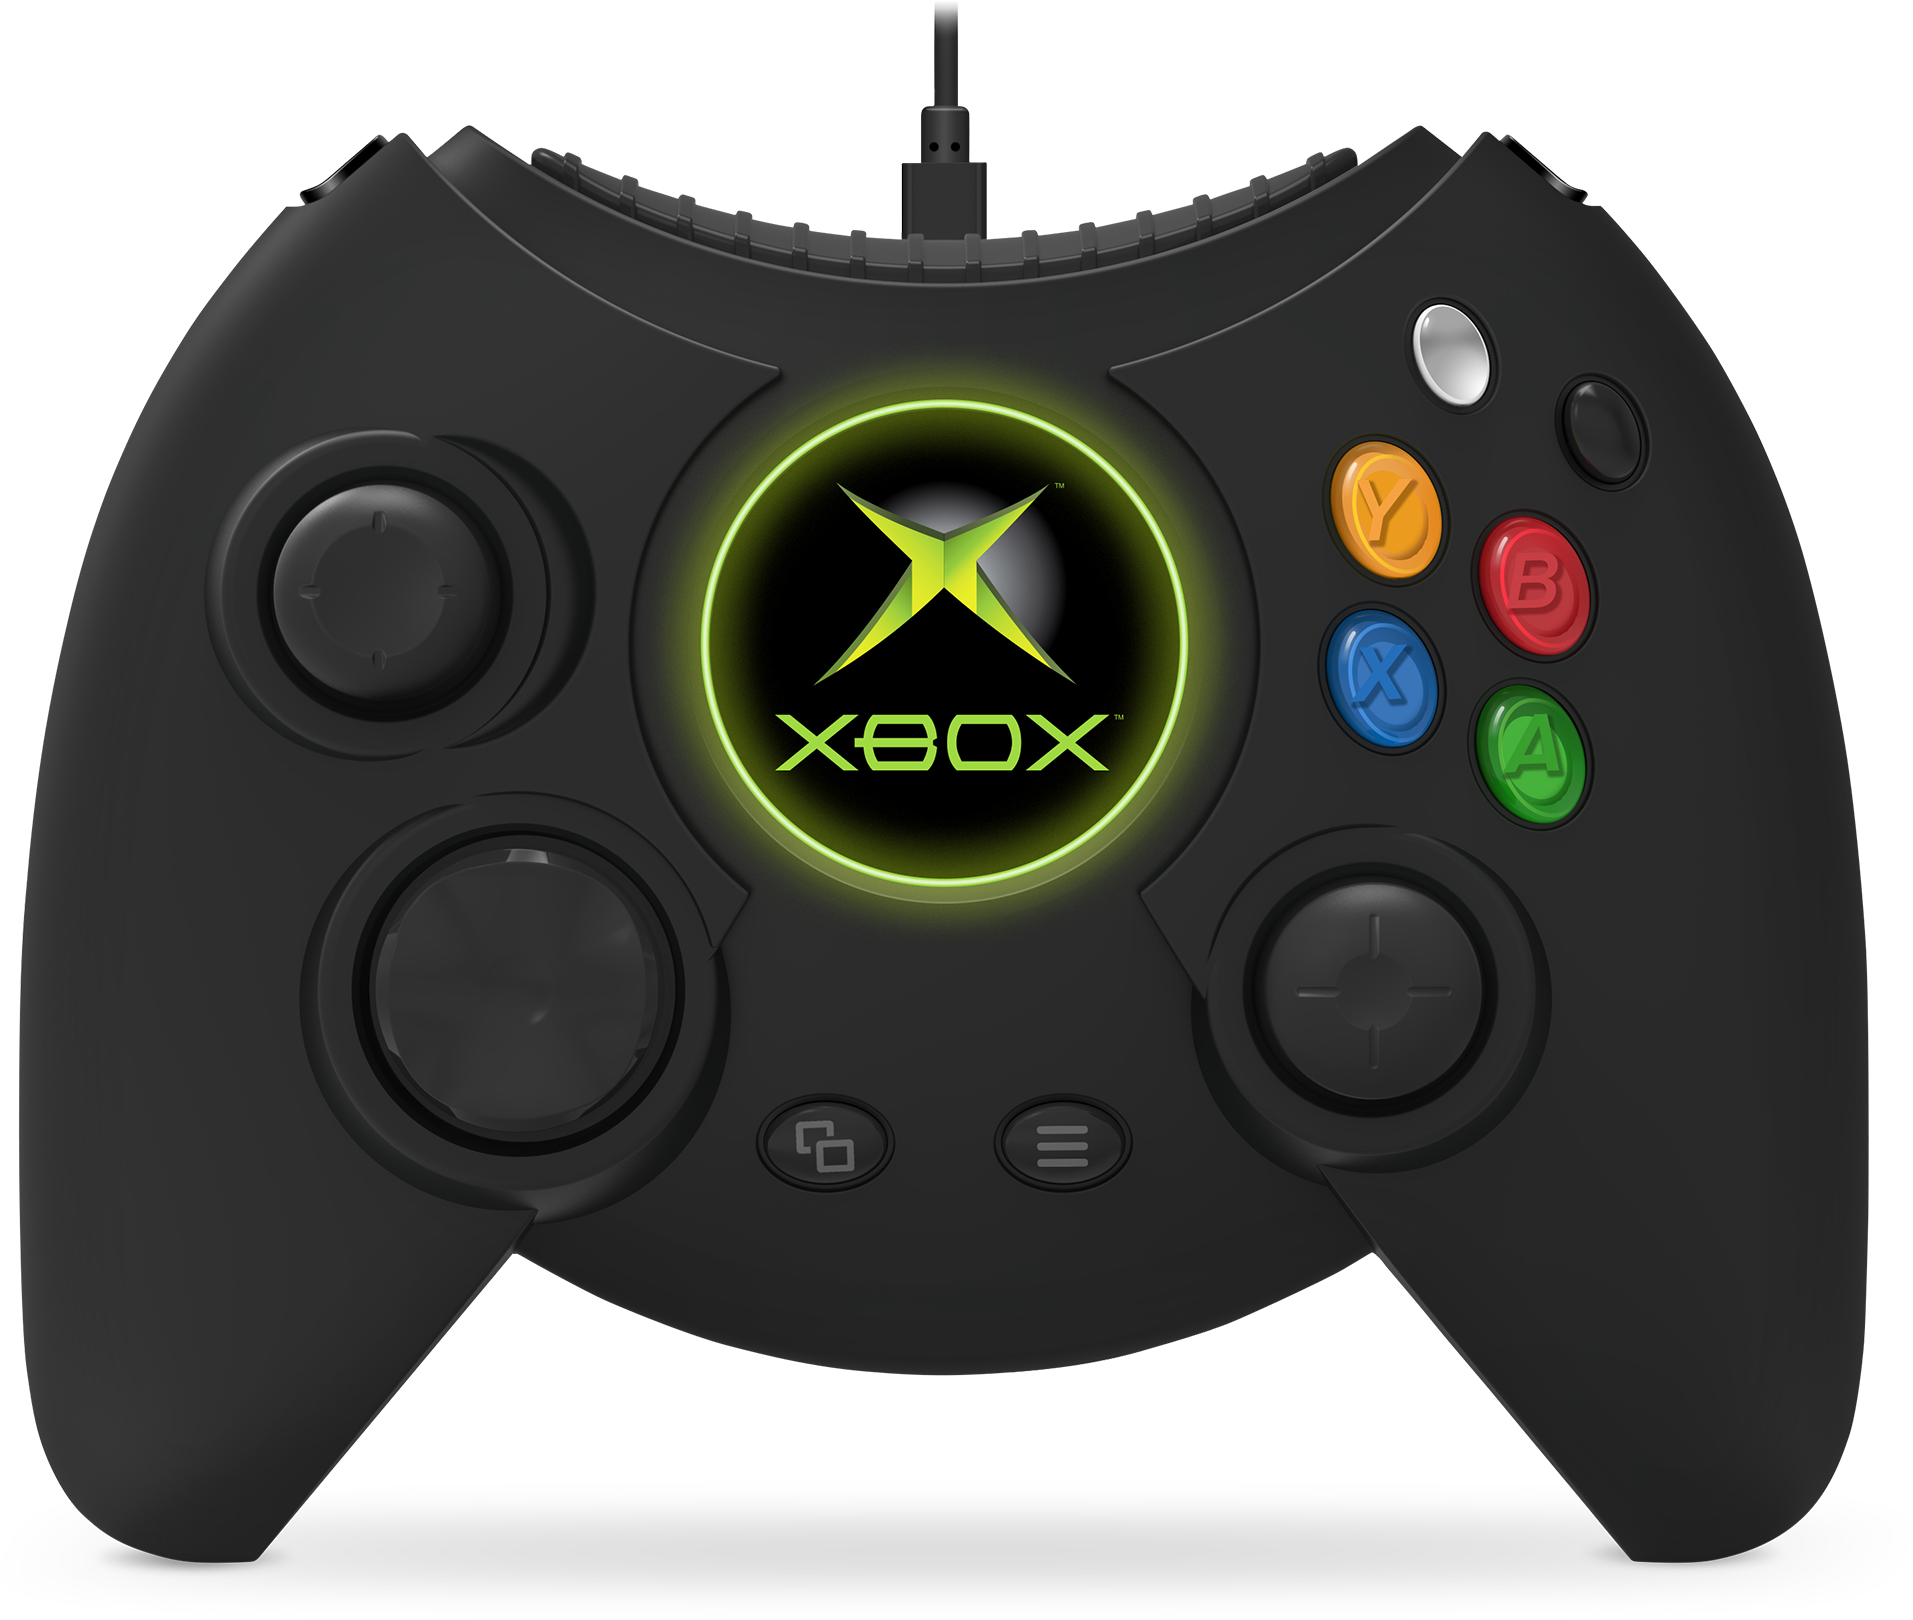 Mortal Kombat X Fight Pad, Xbox Wiki